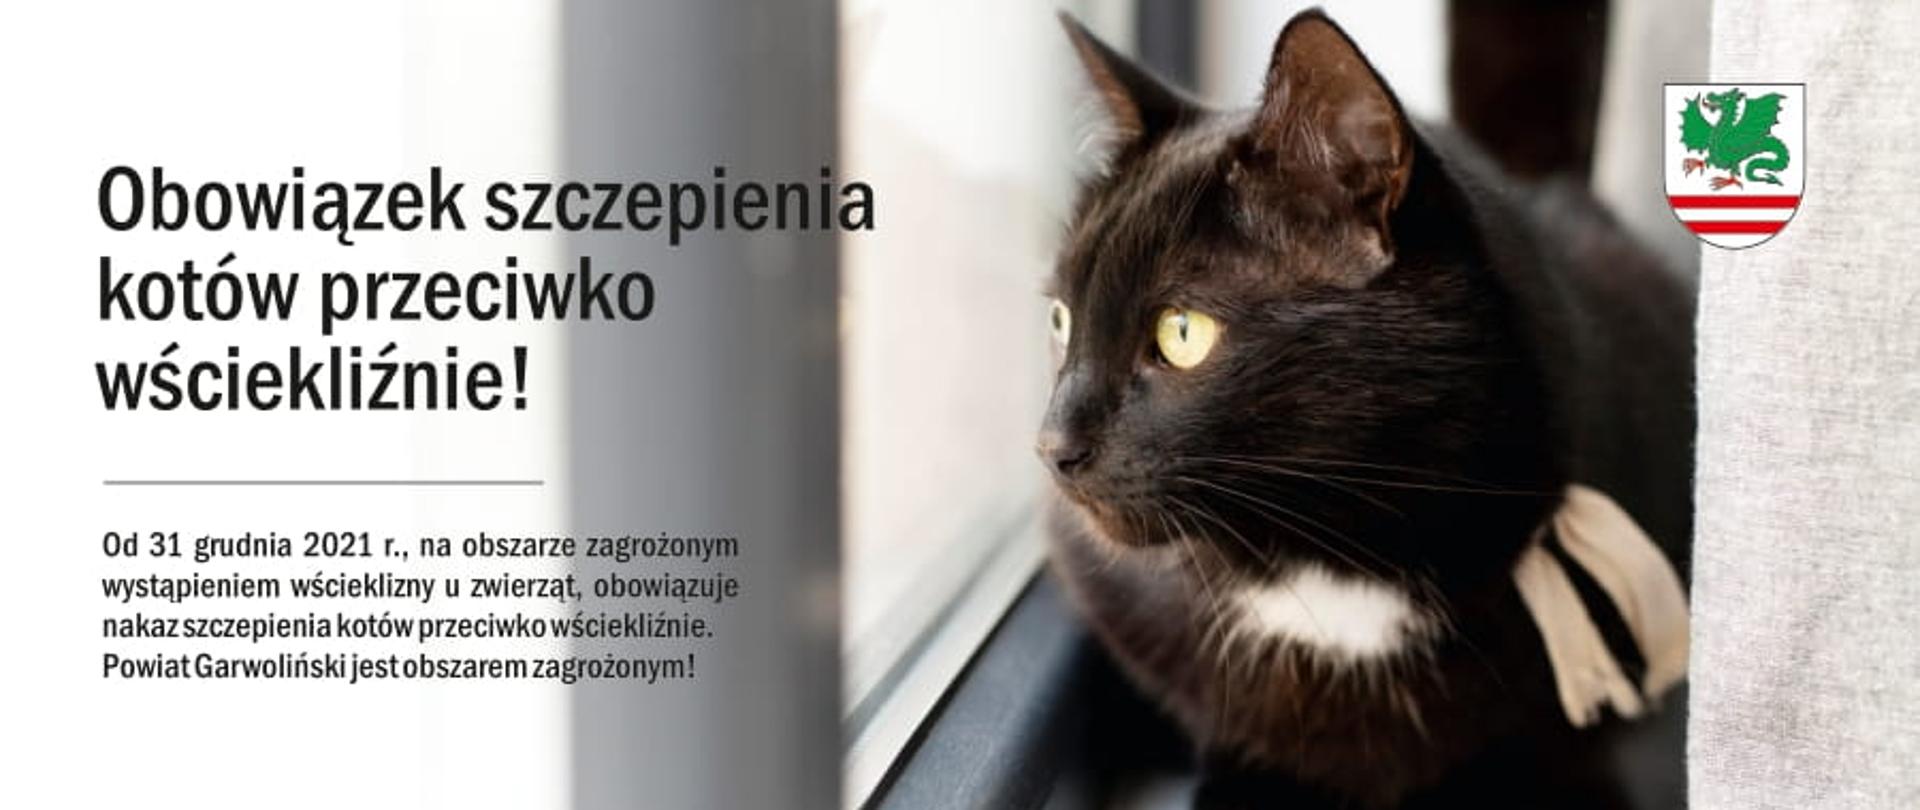 Informacja - obowiązek szczepienia kotów przeciwko wściekliźnie
fot. Freepik.com